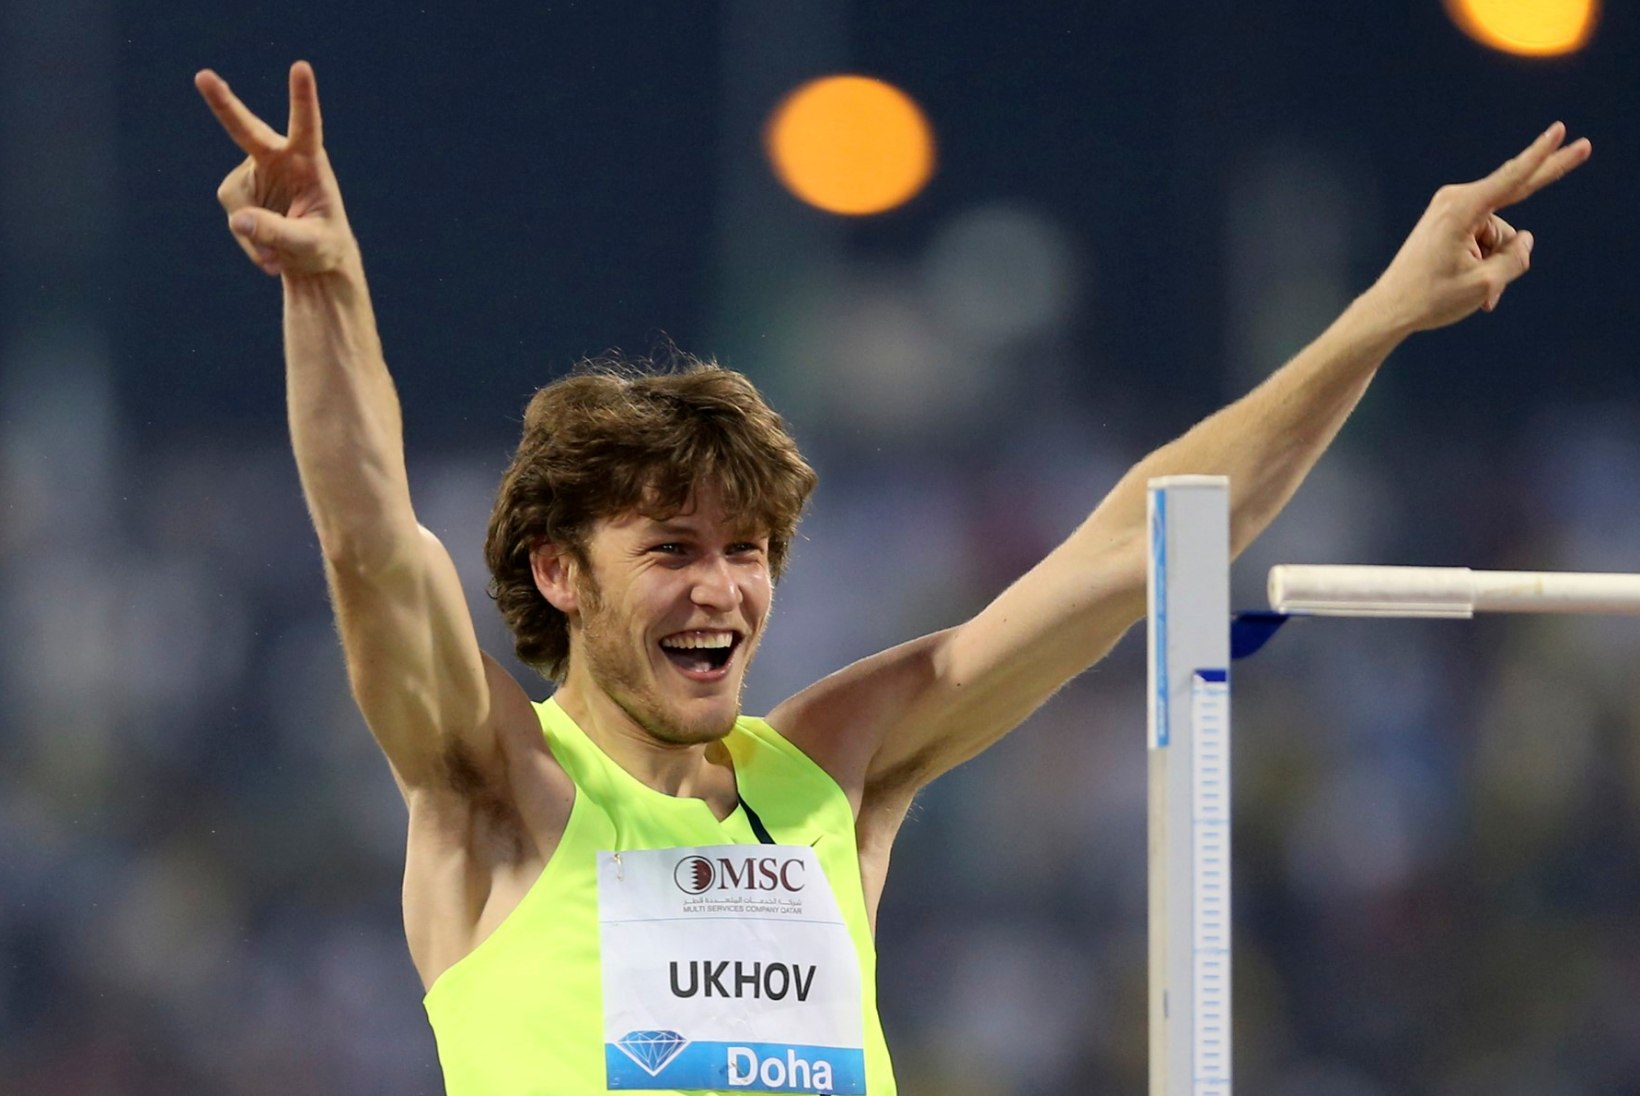 Venemaa kõrgushüppeäss Uhhov: maailmarekord on mulle olümpiavõidust tähtsam